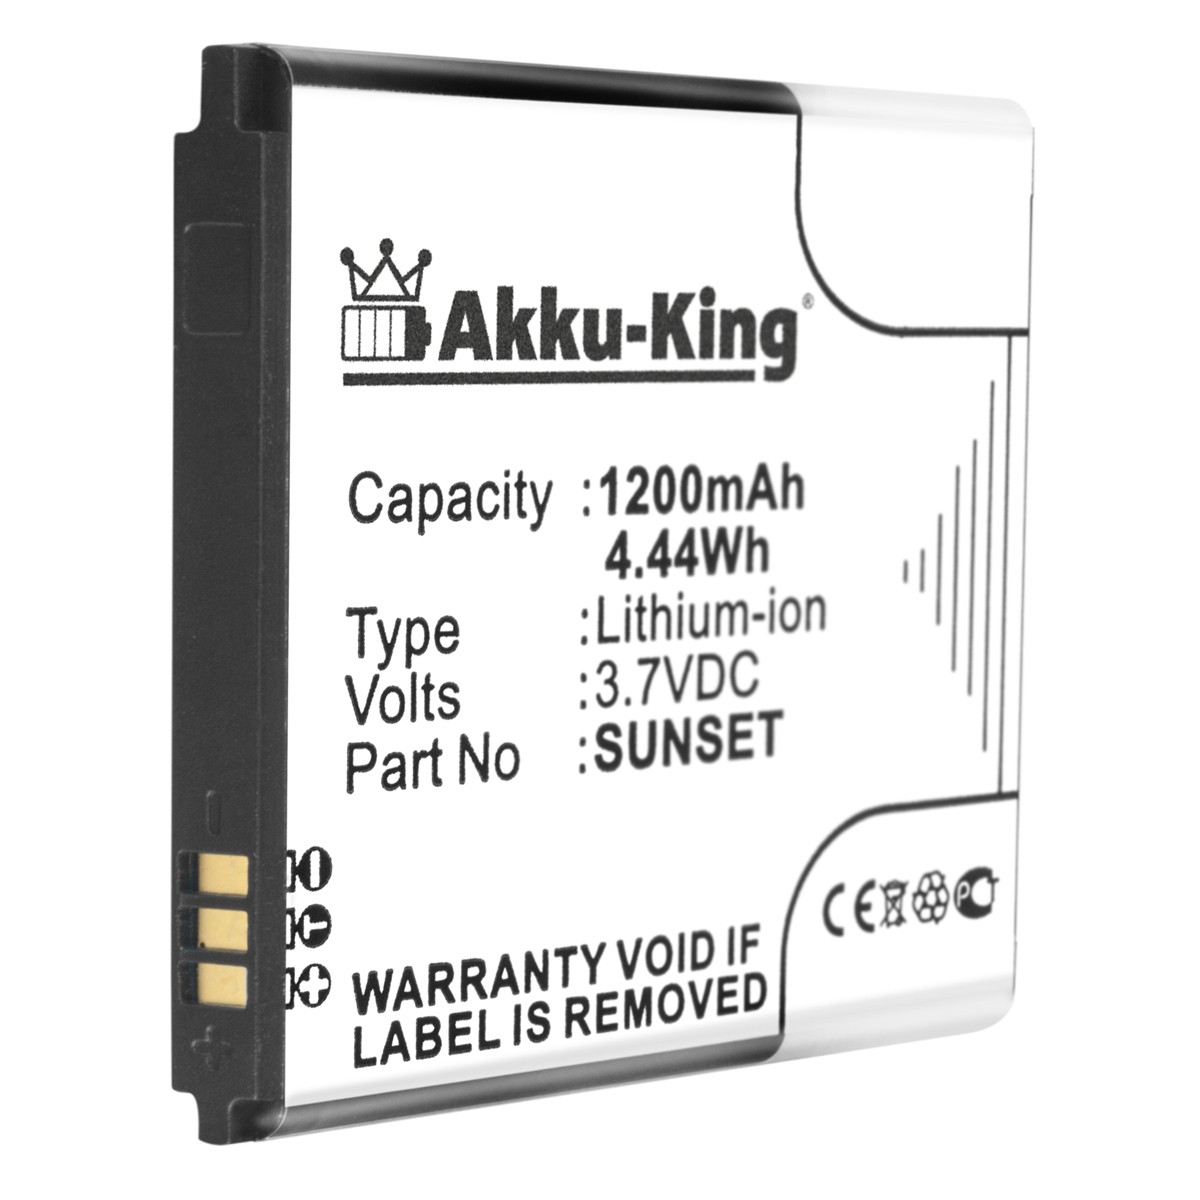 Sunset AKKU-KING Handy-Akku, Akku Wiko Li-Ion kompatibel 3.7 1200mAh Volt, mit